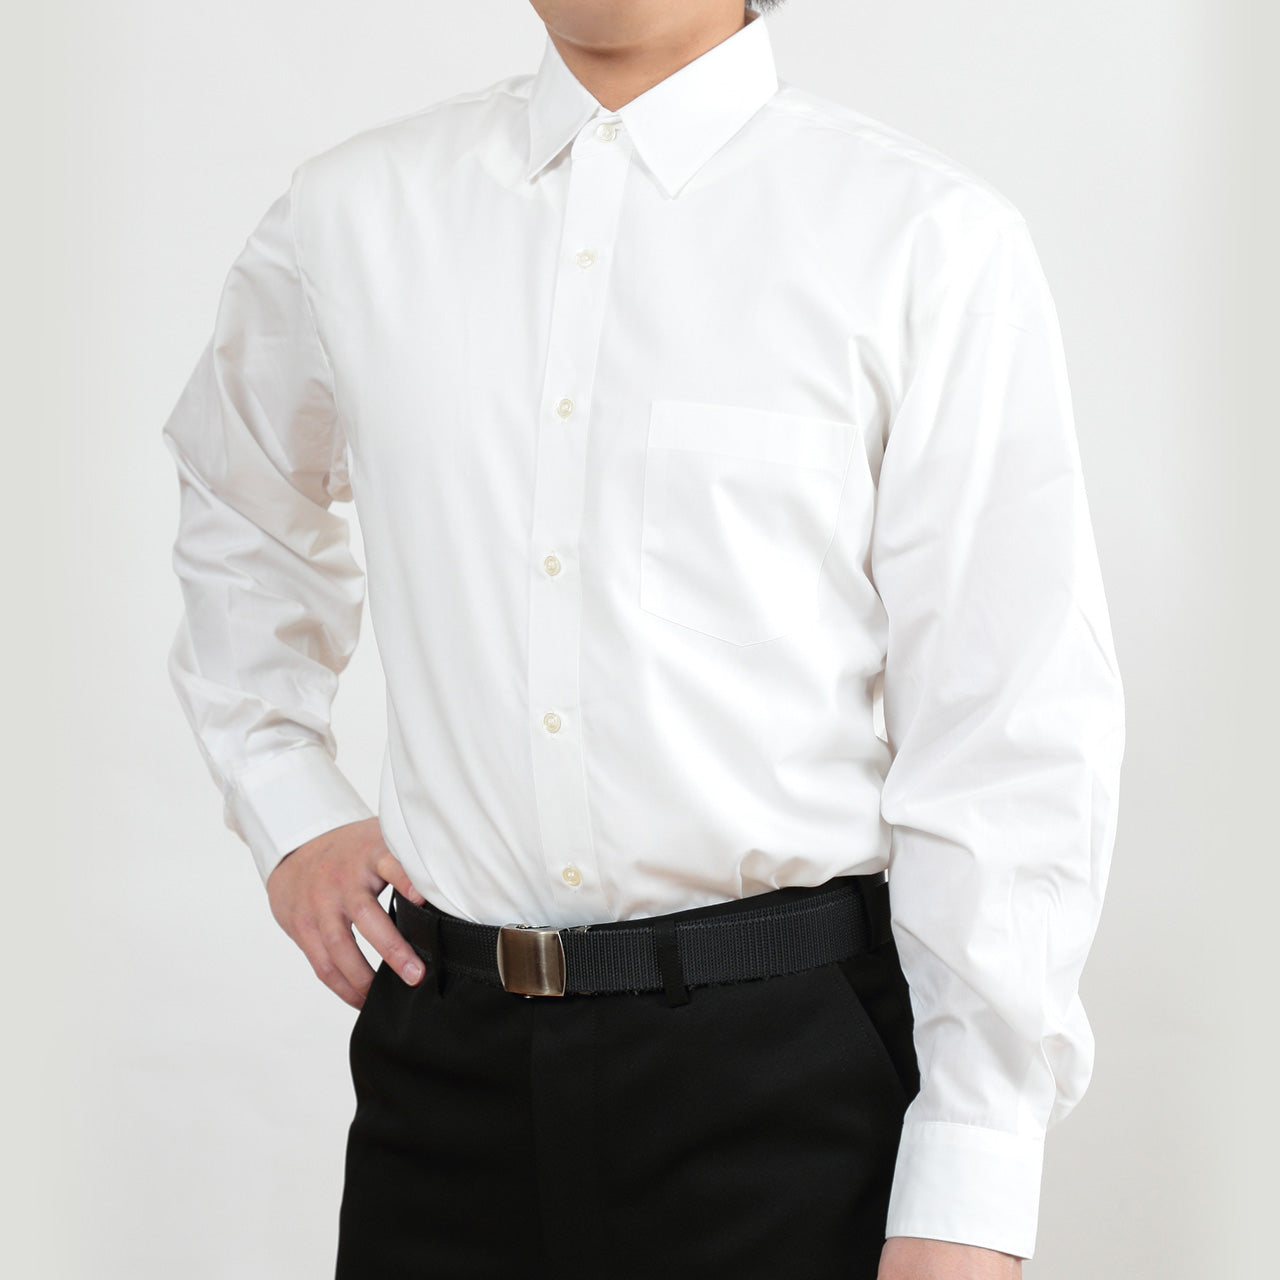 スクールシャツ 男子 長袖 大きいサイズ カッターシャツ ヒロミチナカノ S～3L (制服 学生 学生服 乳白色 ゆったり メンズ シャツ) (取寄せ)